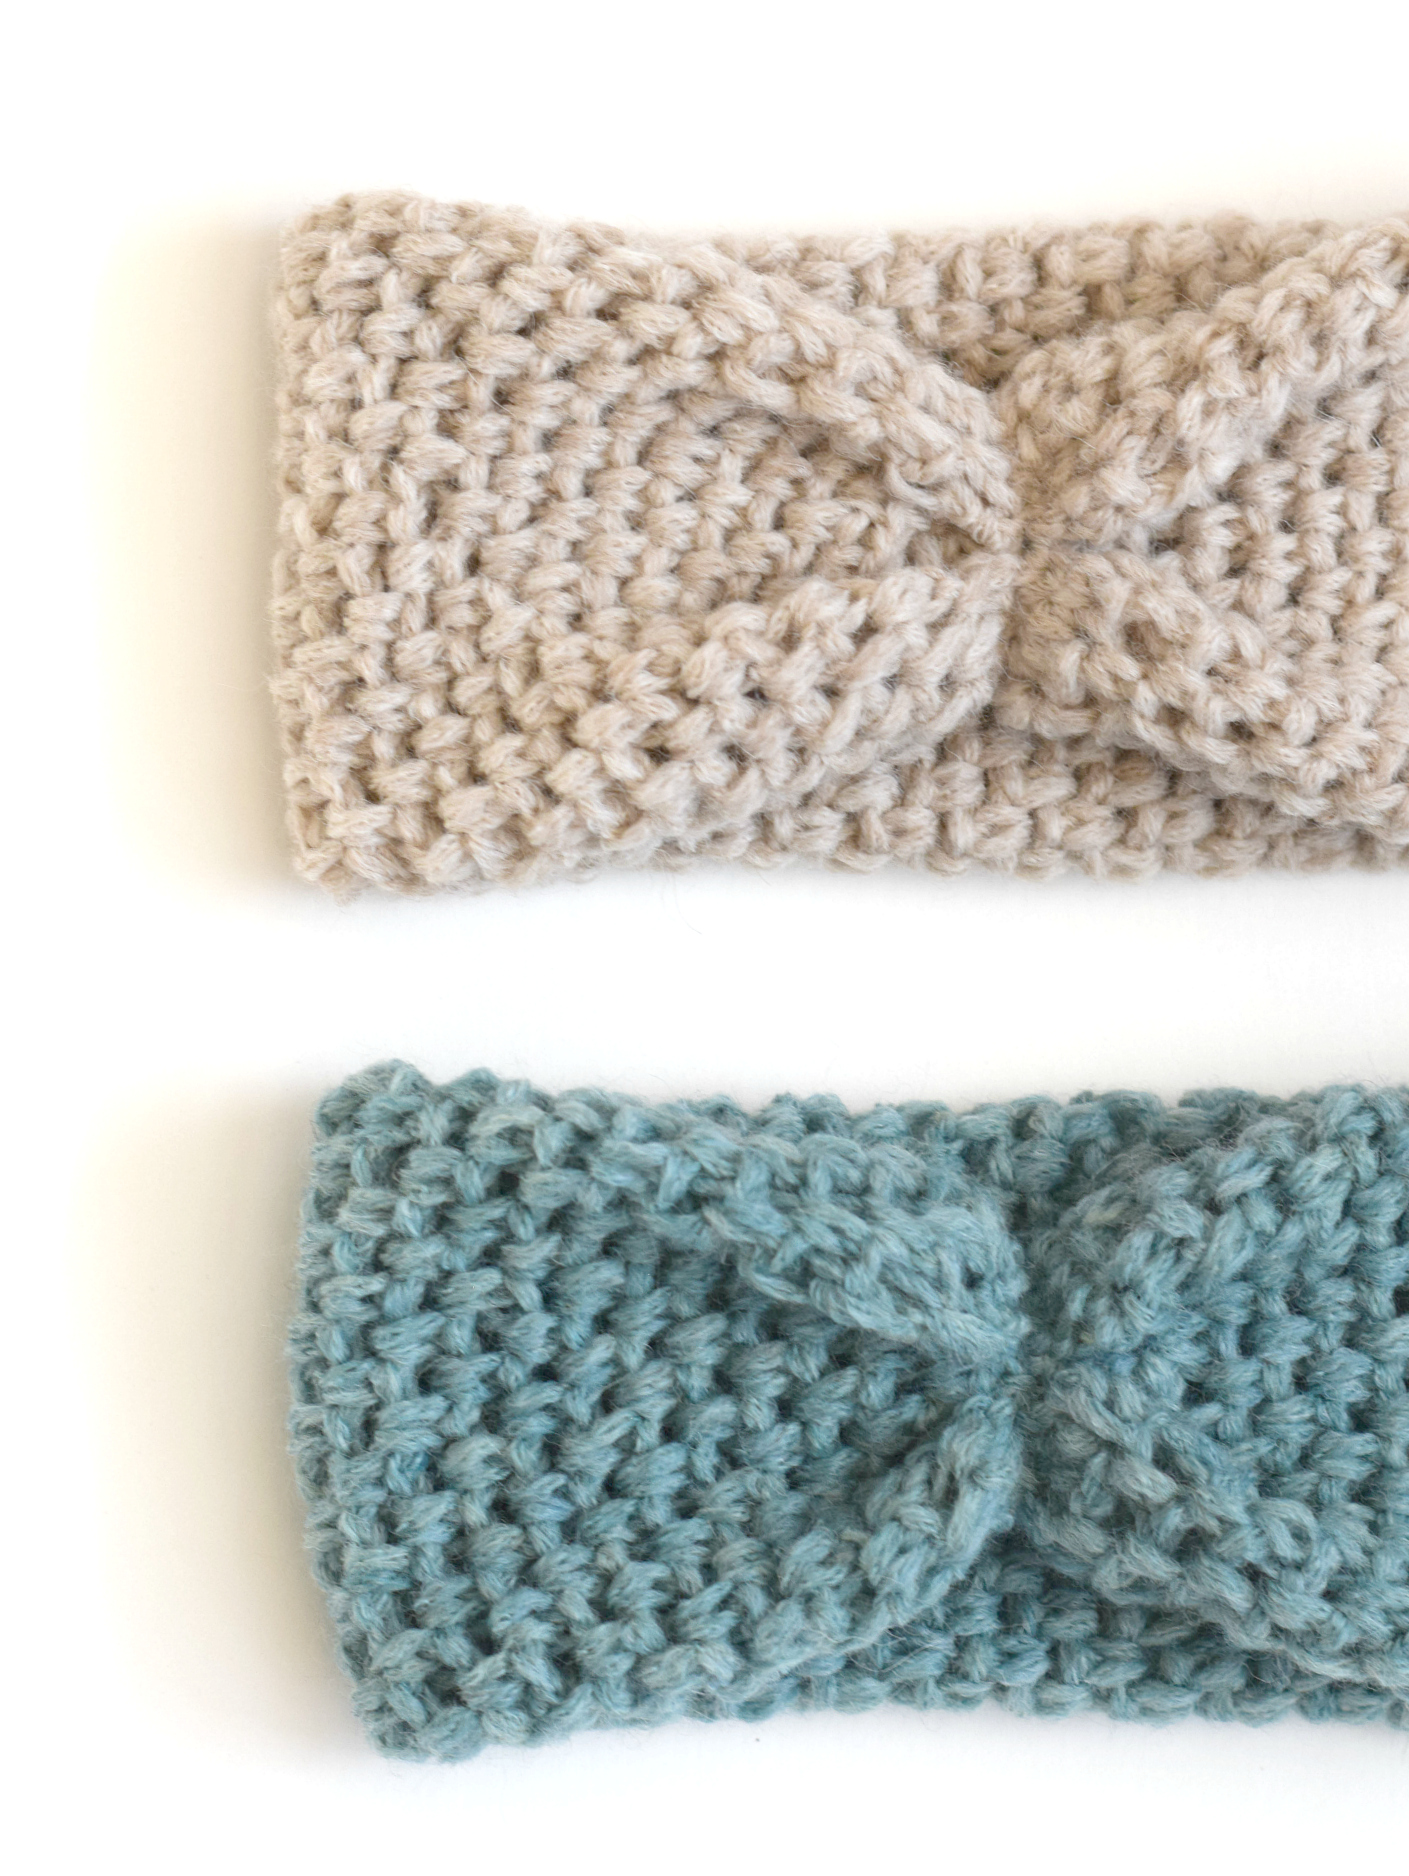 How-To: Crocheted Hook 'n Stitch Headband - Make